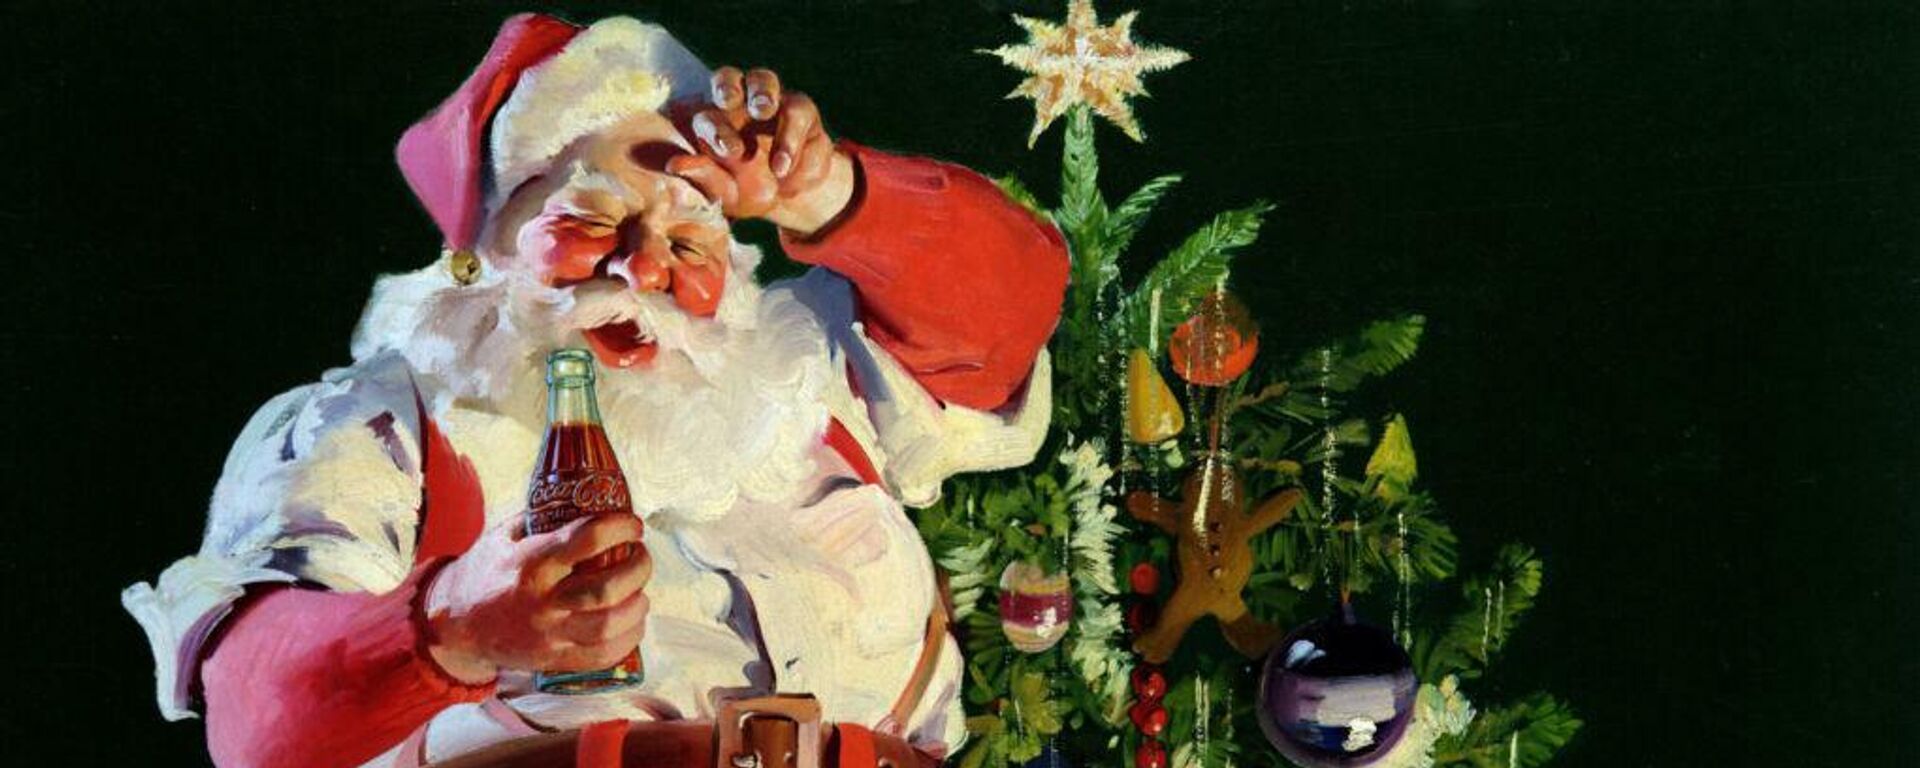 Santa Claus con una Cocacola. - Sputnik Mundo, 1920, 23.12.2021